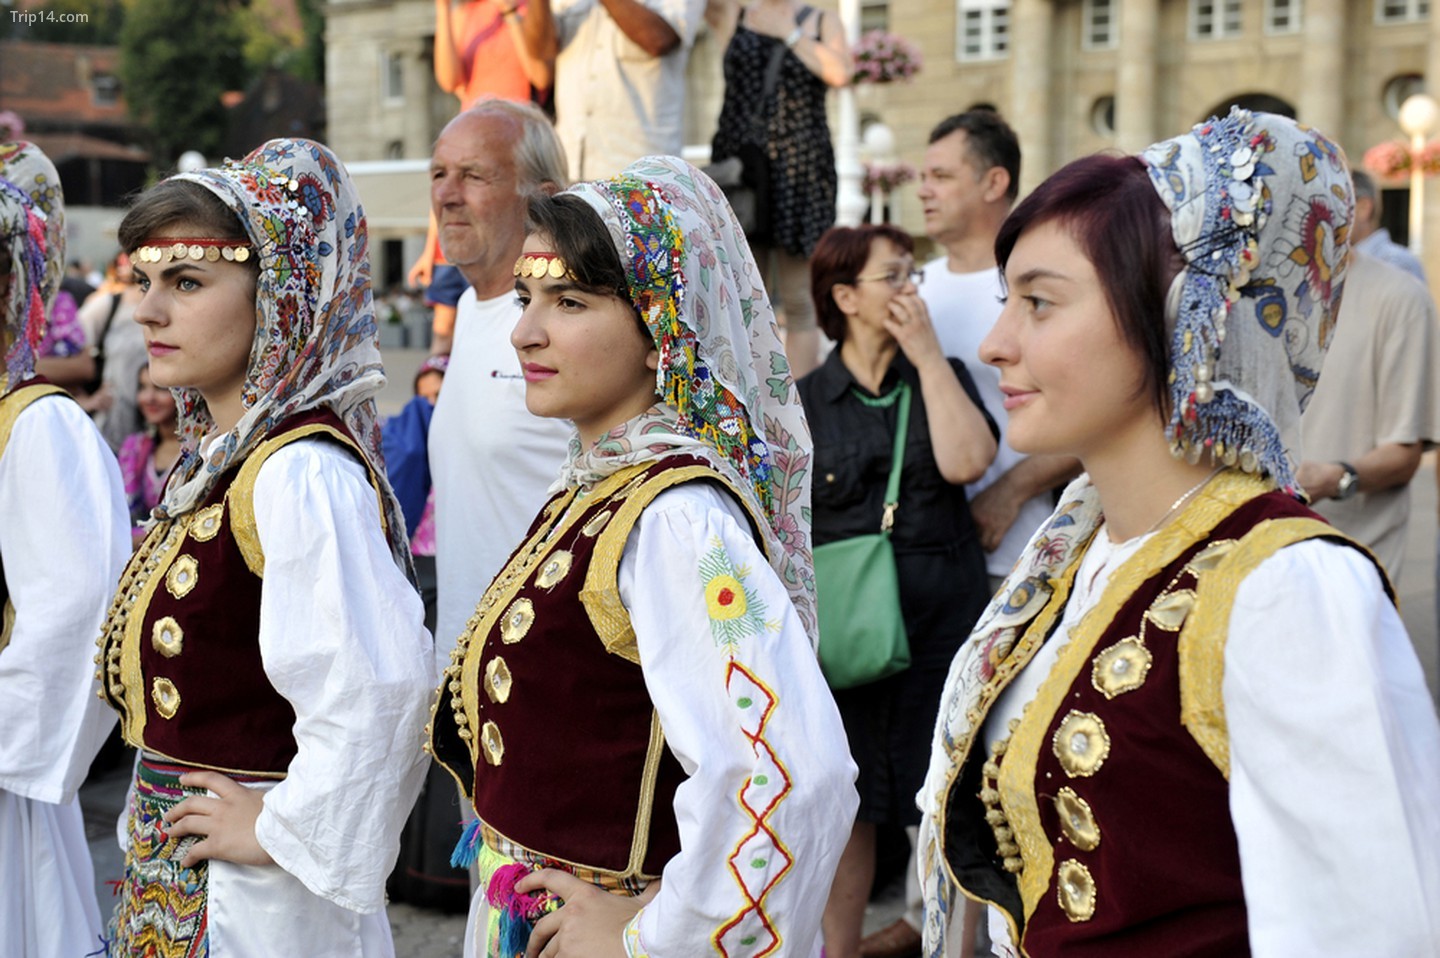 Nhóm dân gian Hội Văn hóa Albania Jahi Hasani đến từ Cegrane, Macedonia